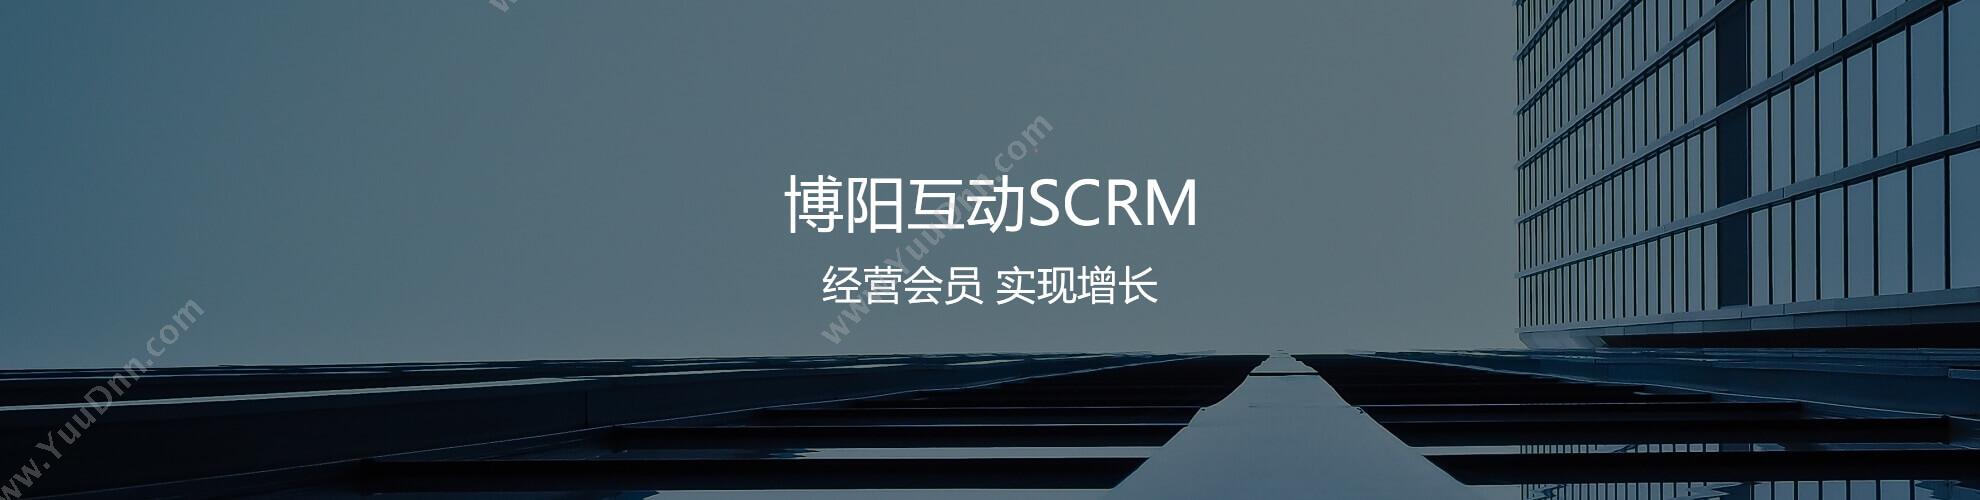 北京博阳互动 微信小程序分销商城 博阳互动SCRM助零售业裂变销售 分销管理